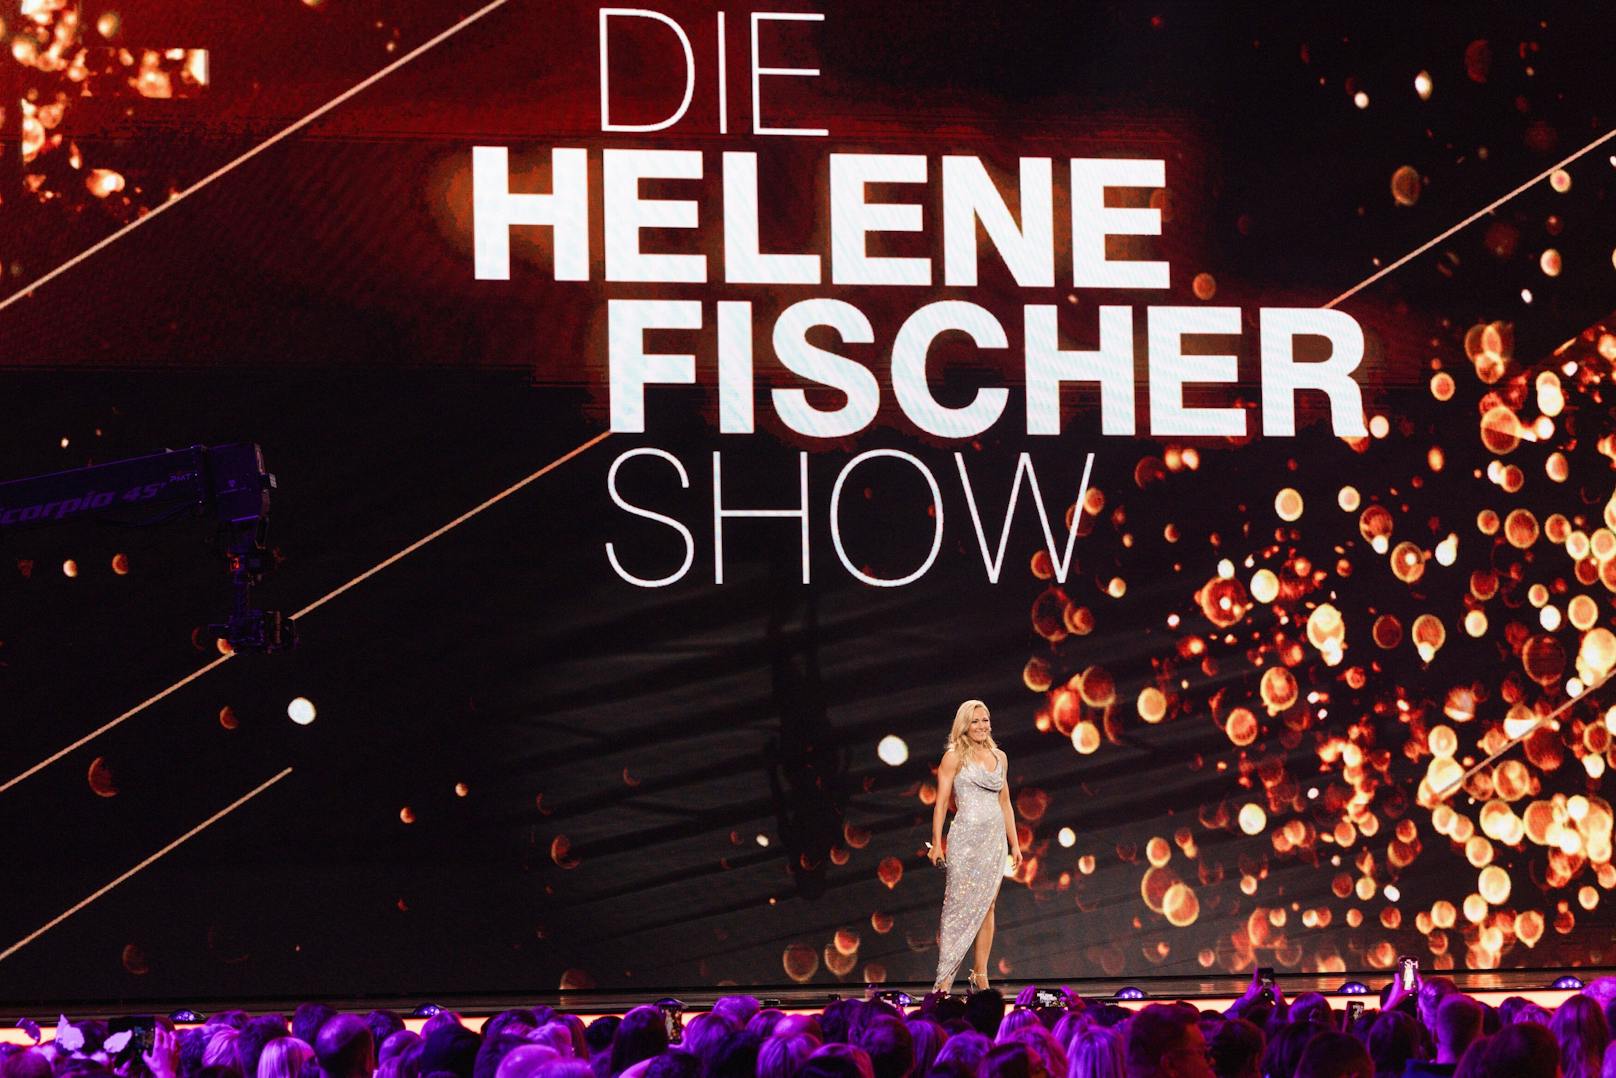 Helene Fischer und Shirin David haben in der am Montag ausgestrahlten "Helene Fischer Show" im ZDF ihre Wettschuld aus Thomas Gottschalks letzter "Wetten, dass..?"-Show eingelöst. Das Publikum quittierte es mit Gelächter<a href="https://www.20min.ch/story/shirin-david-thomas-gottschalk-wetten-dass-feminismus-debatte-759470020063">.</a>